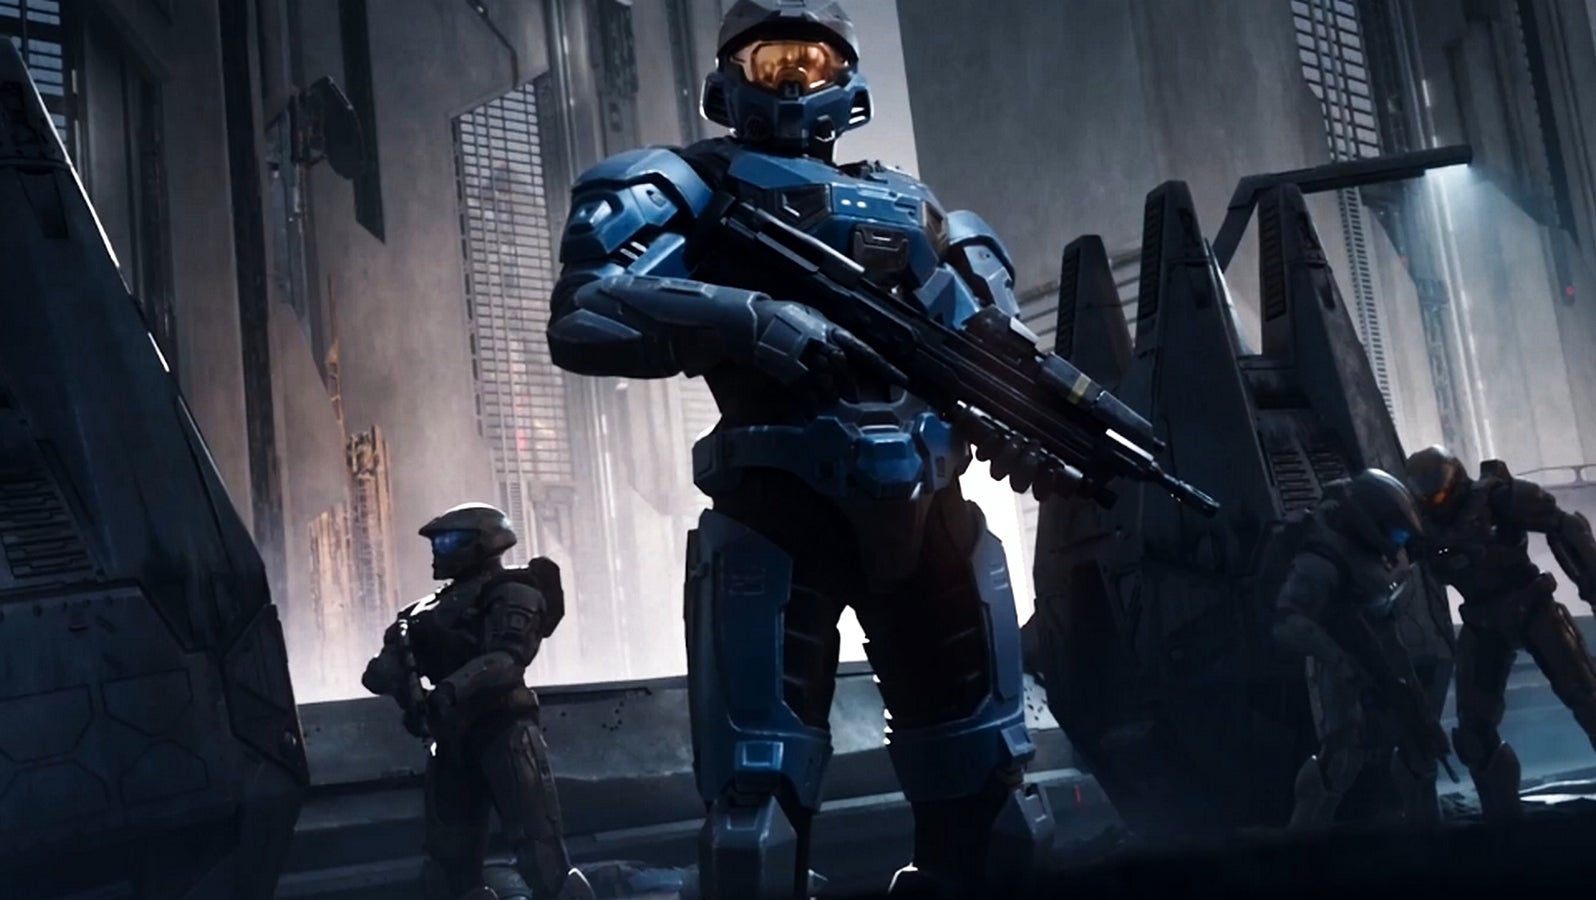 Bilder zu Halo Infinite erscheint am 8. Dezember, limitierte Konsole und Controller angekündigt